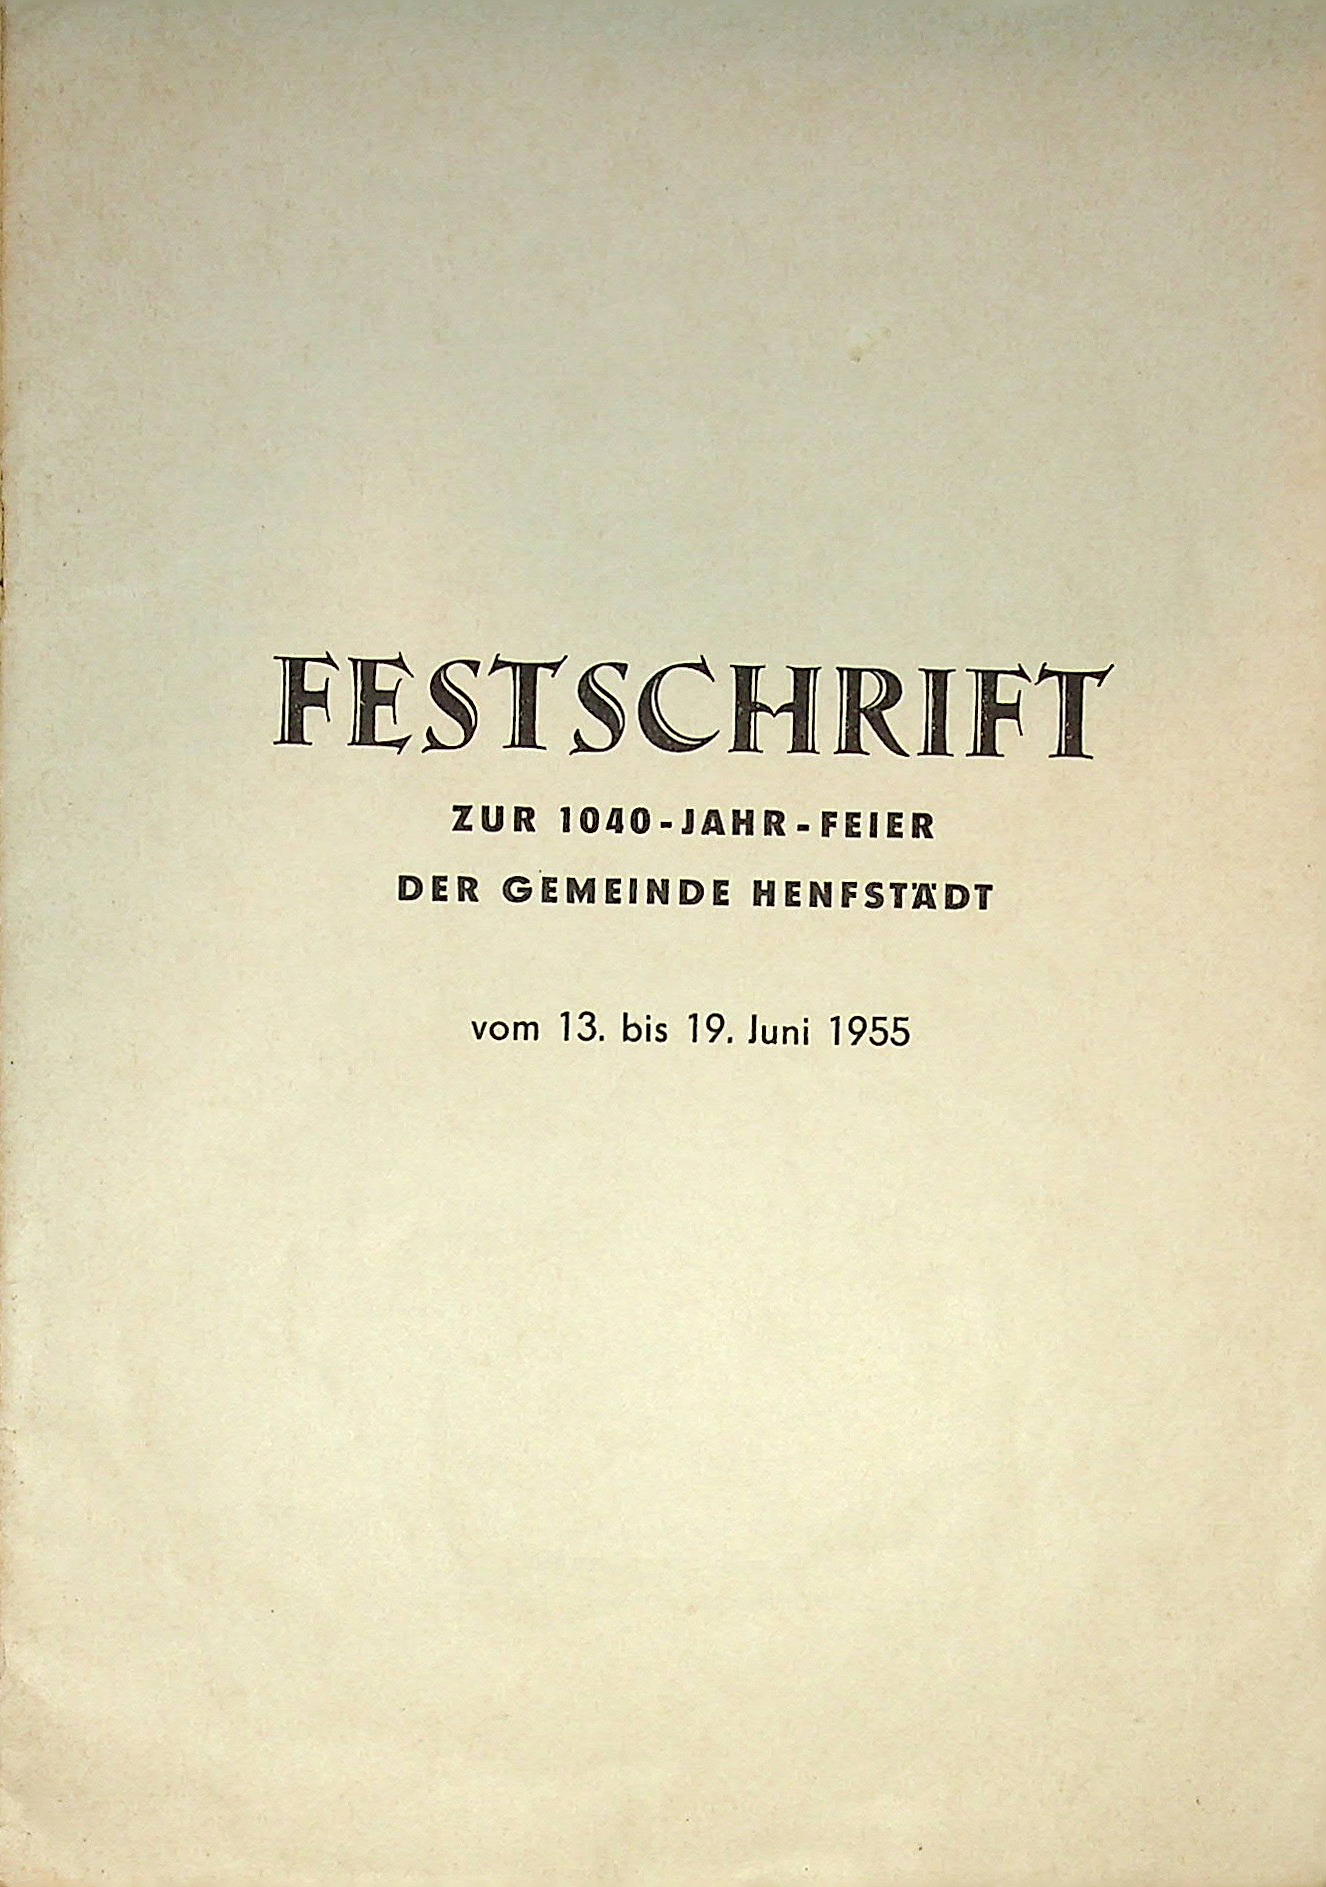 Festschrift Henfstädt 1955